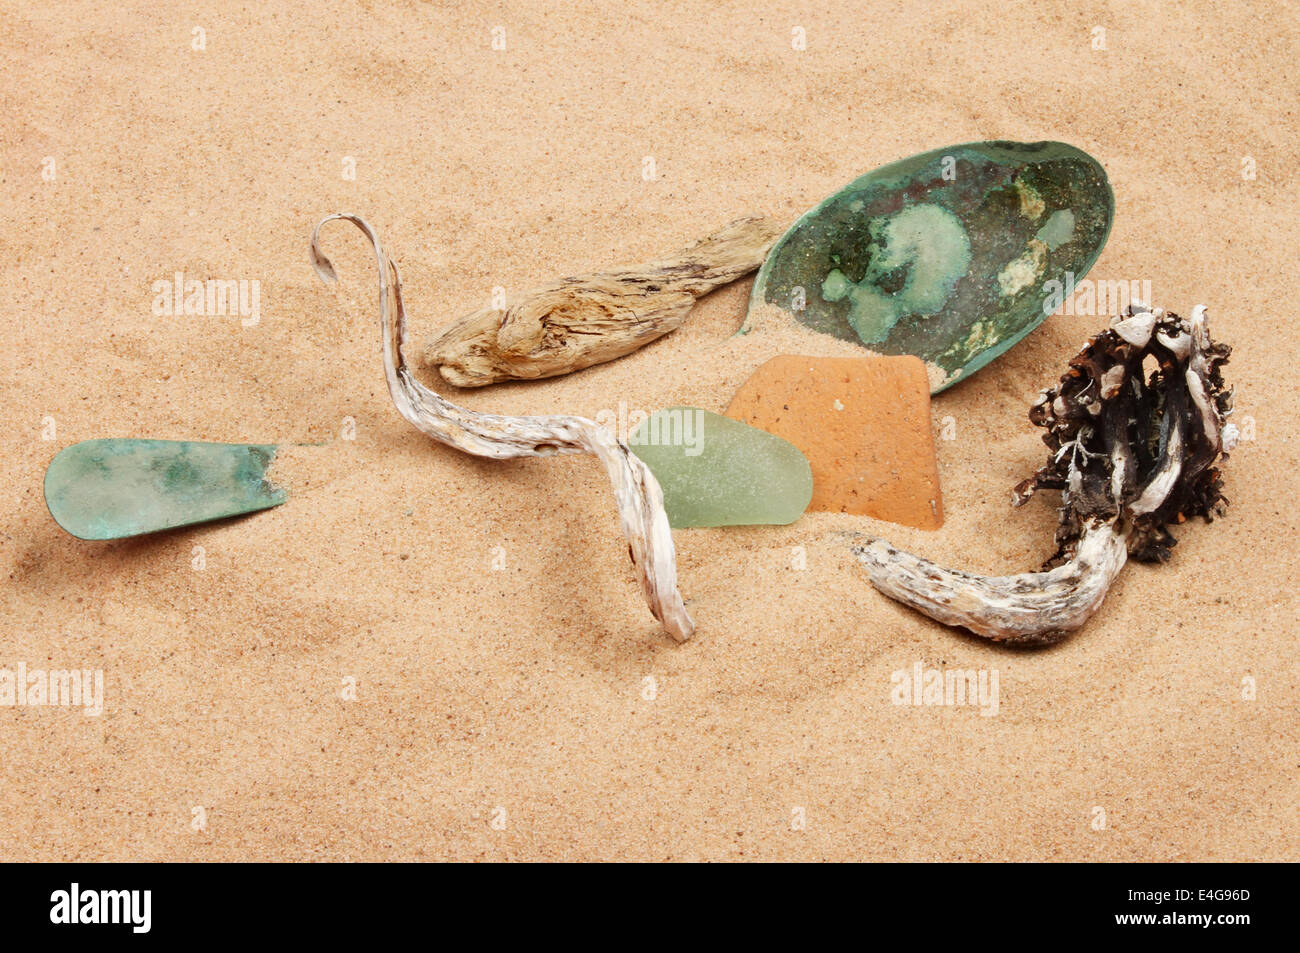 Todavía la vida de playa de escombros en la arena Foto de stock